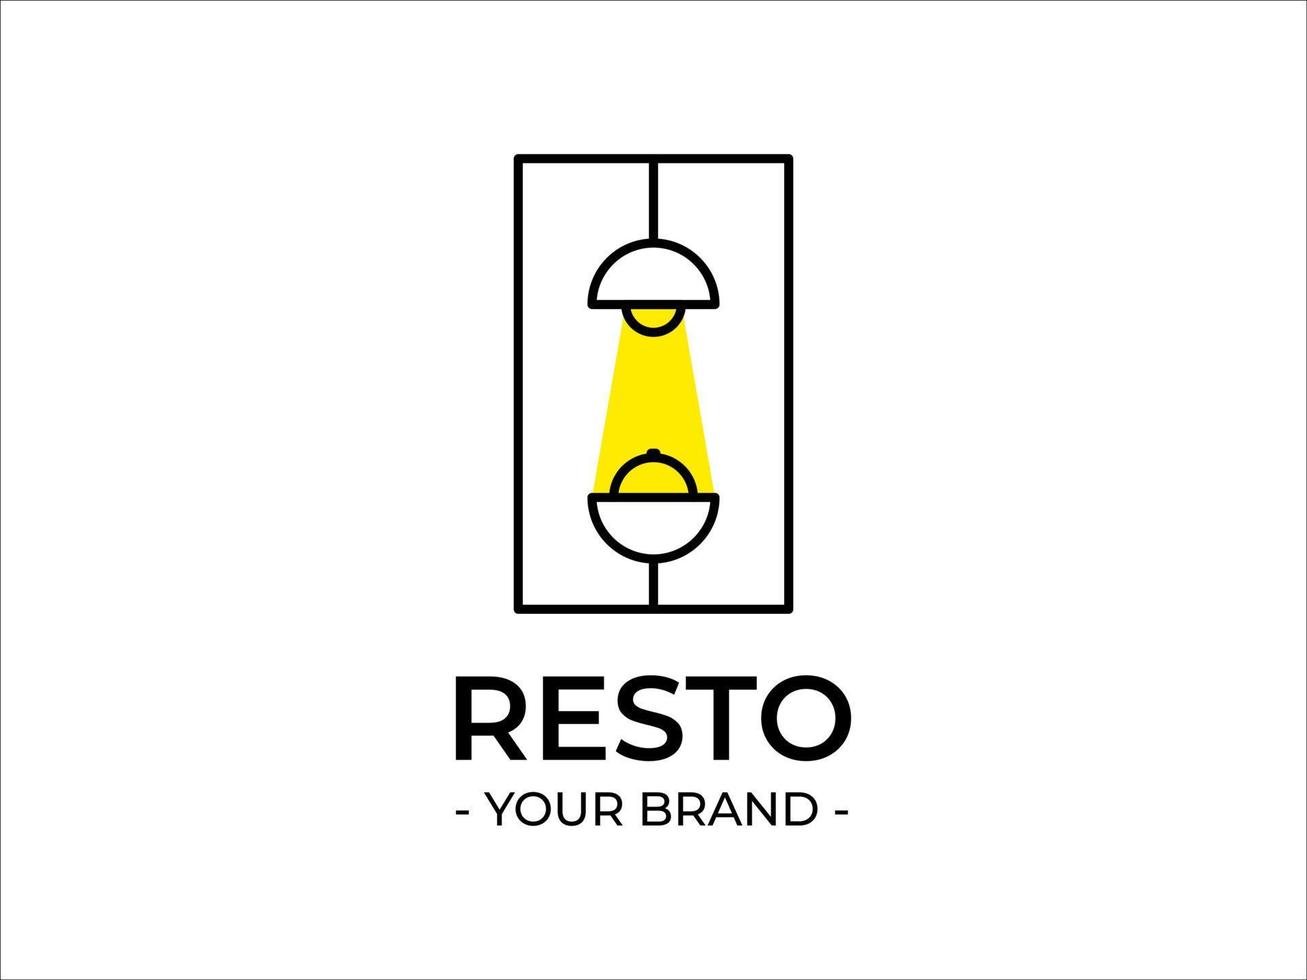 Logodesign für ein Restaurant, oben leuchtet ein Licht gelb, unten eine Tischform und oben drauf eine Geschirrabdeckung, die sich als gestalterische Referenz eignet vektor